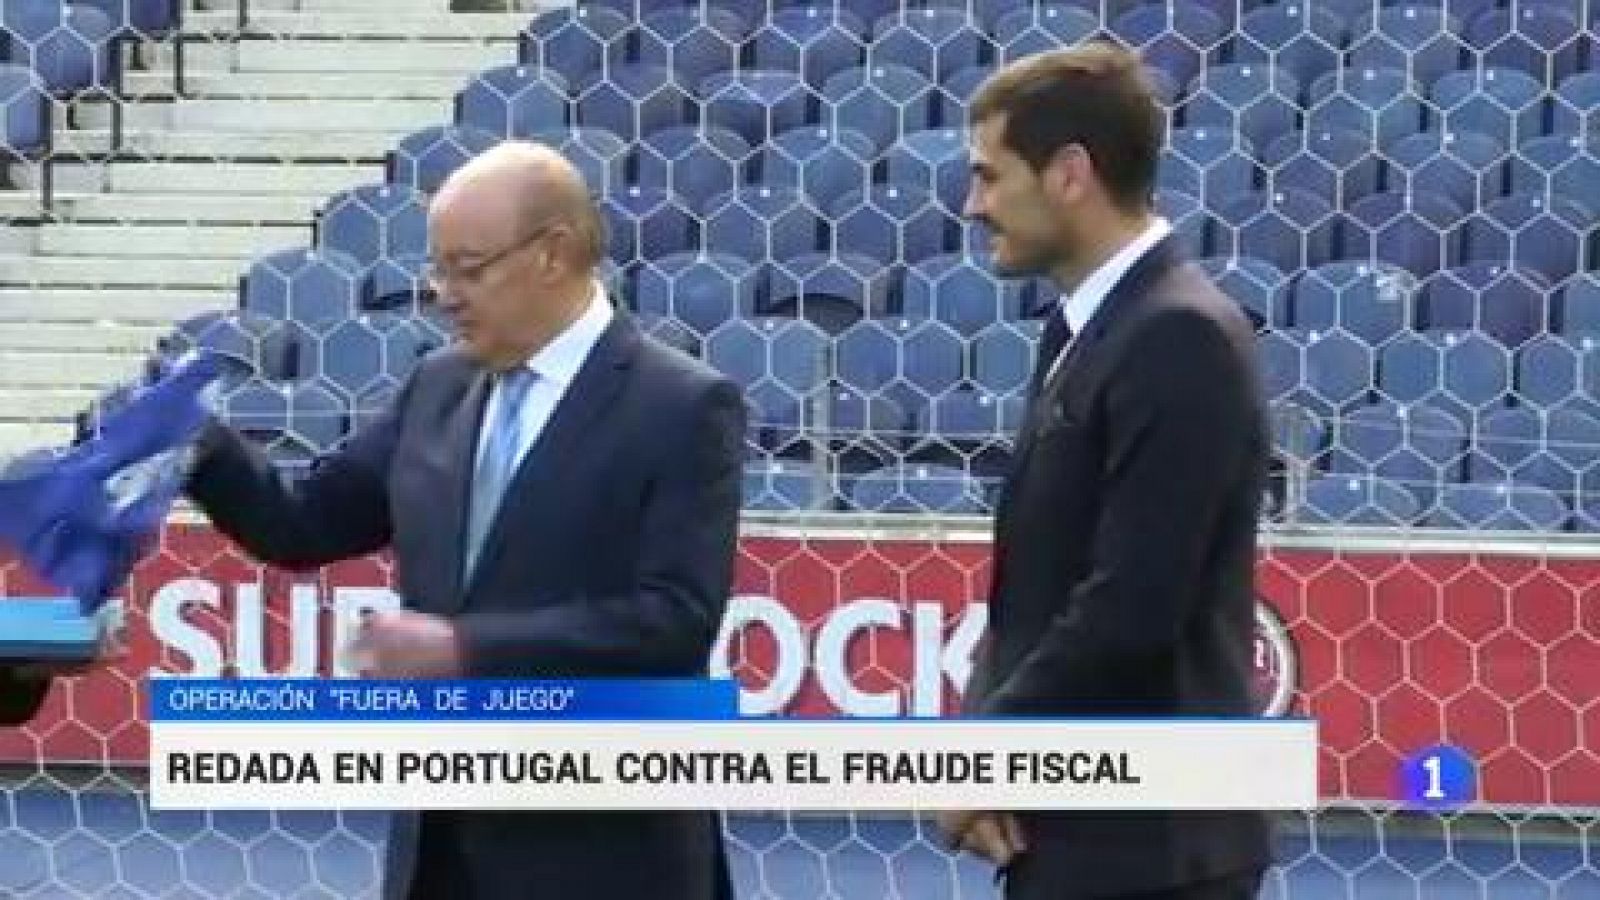 Registran el domicilio de Casillas en una operación contra el fraude fiscal en el fútbol portugués